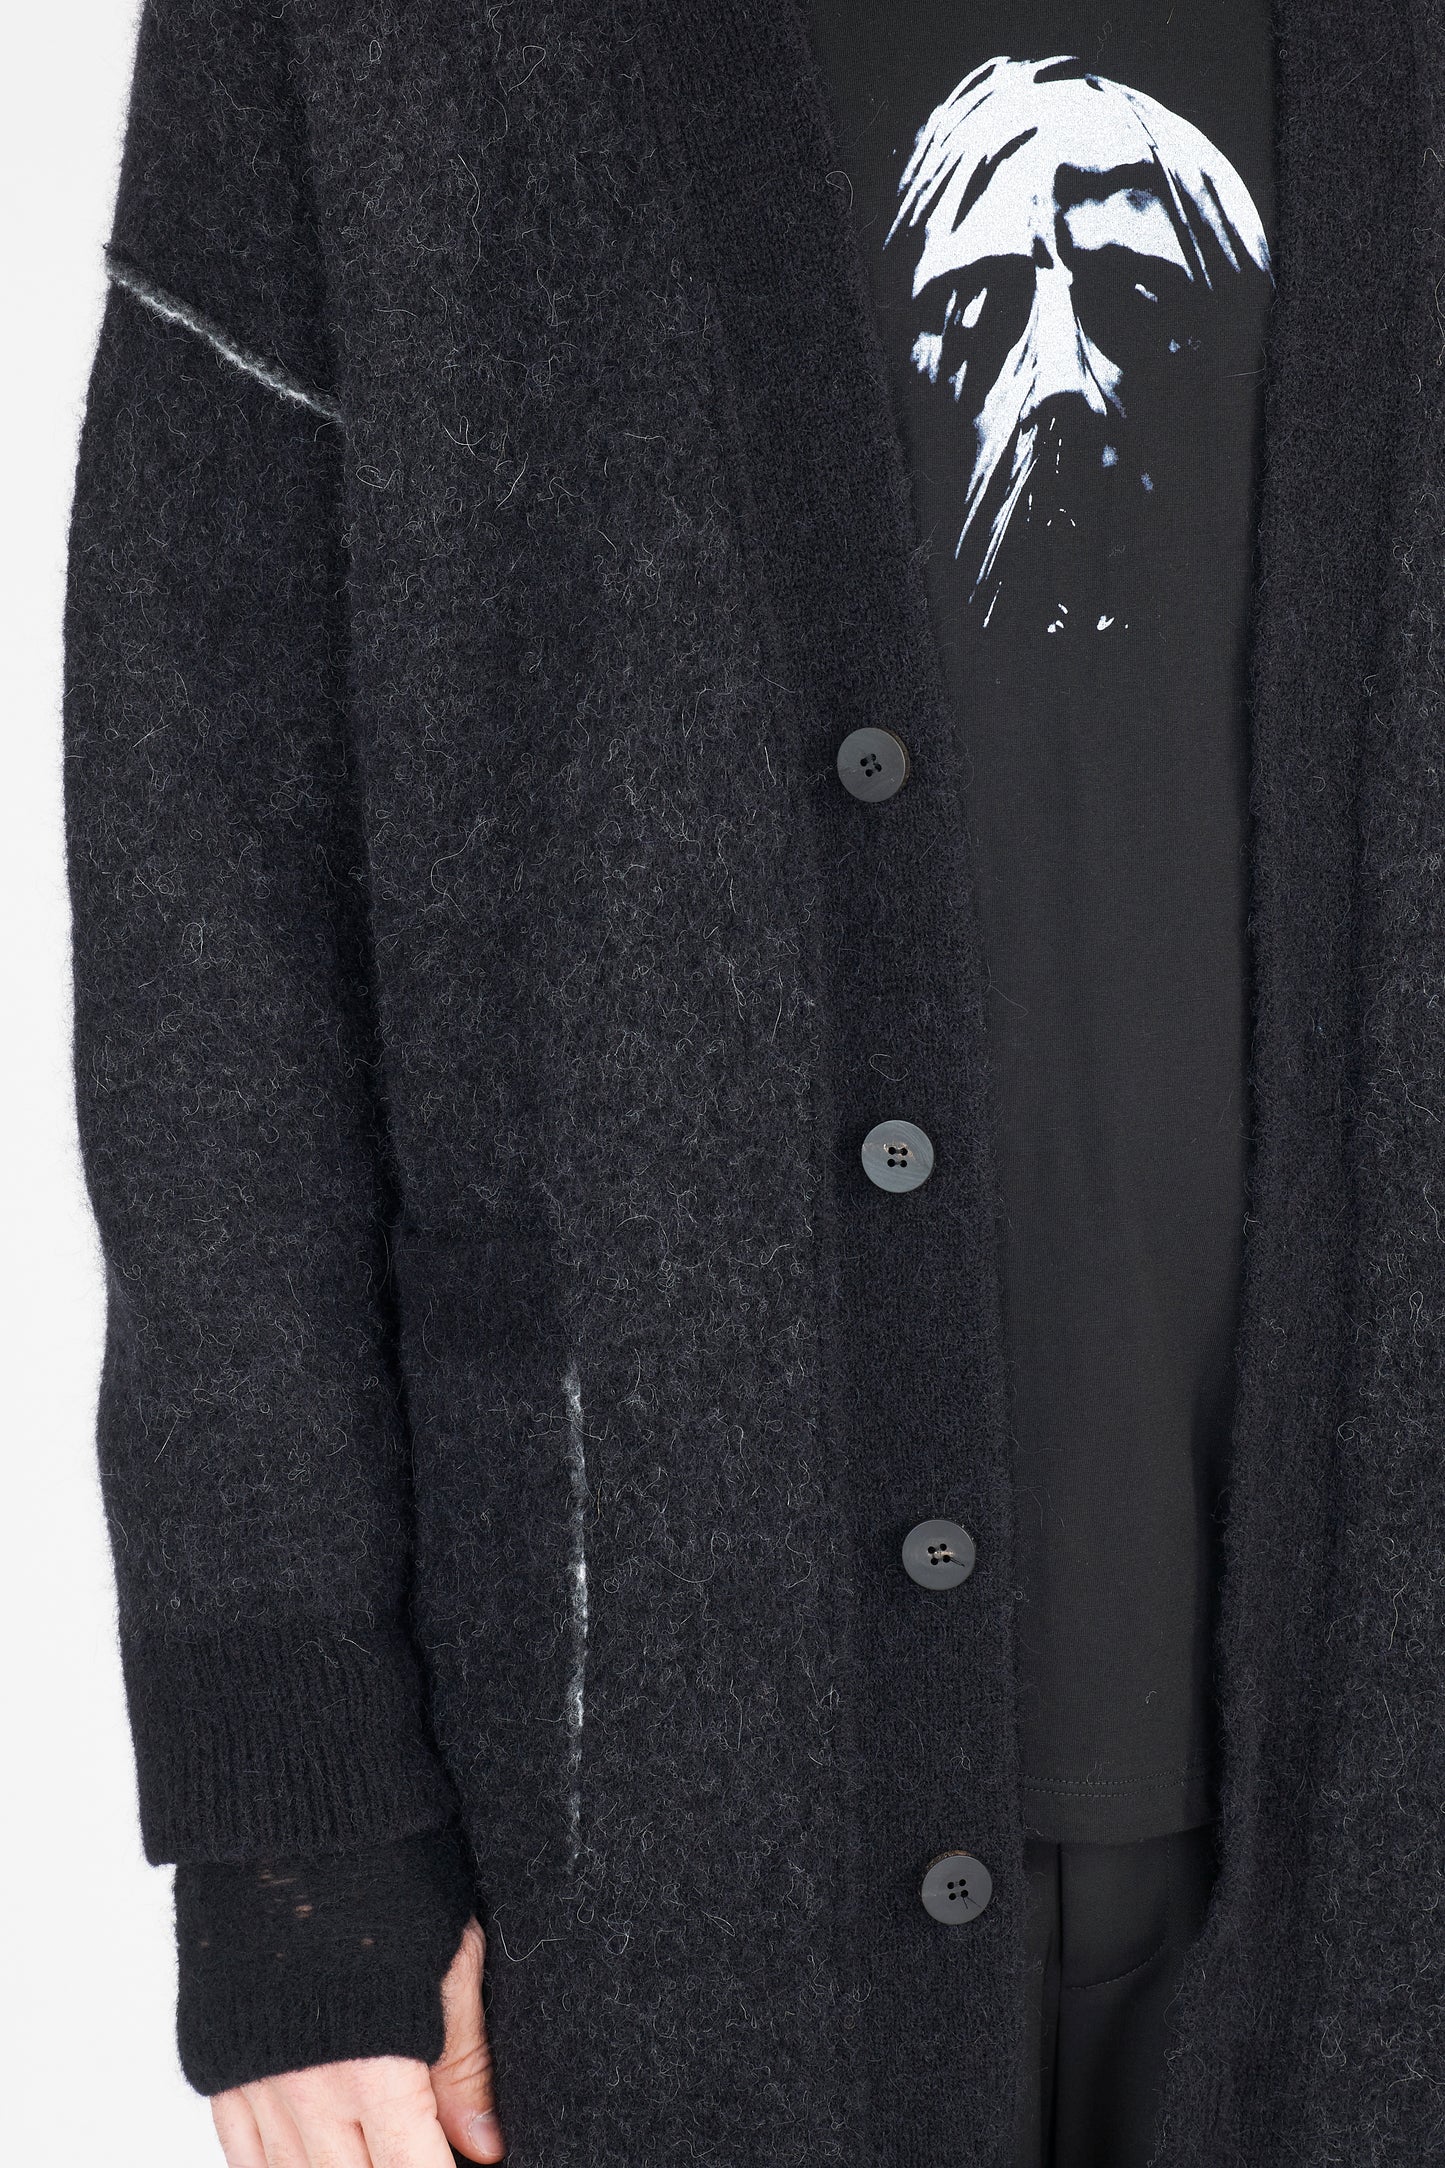 Black Face Print Alpaca Wool Knit Long Cardigan